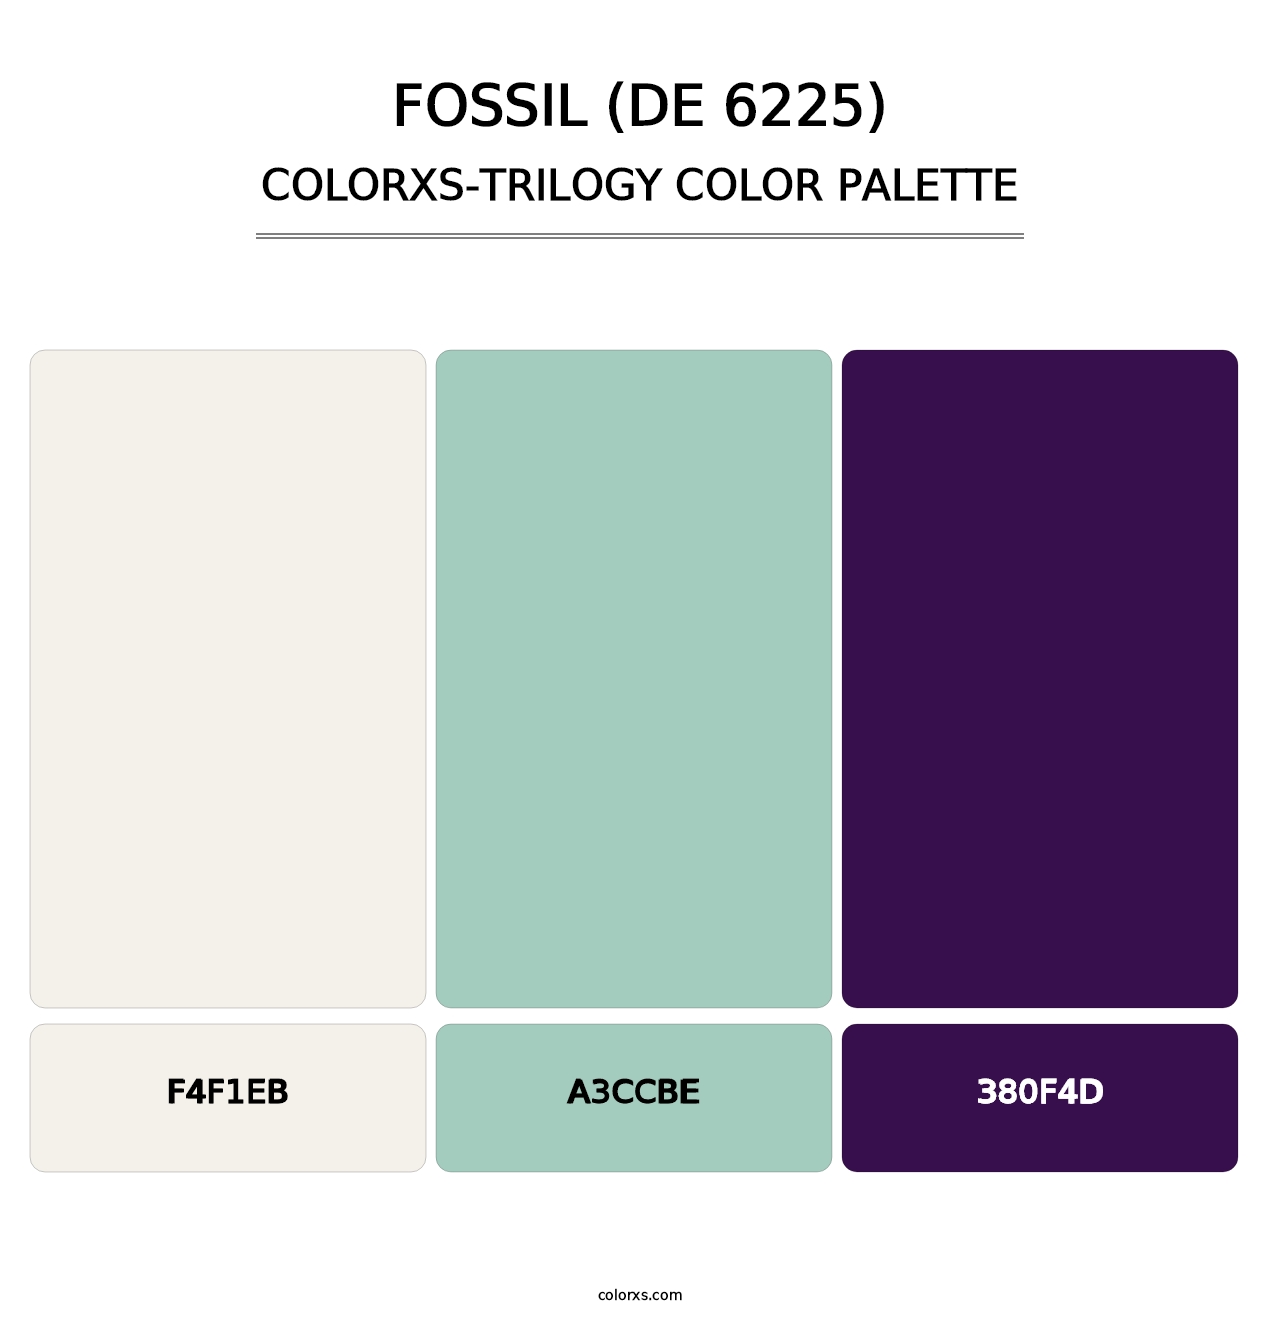 Fossil (DE 6225) - Colorxs Trilogy Palette